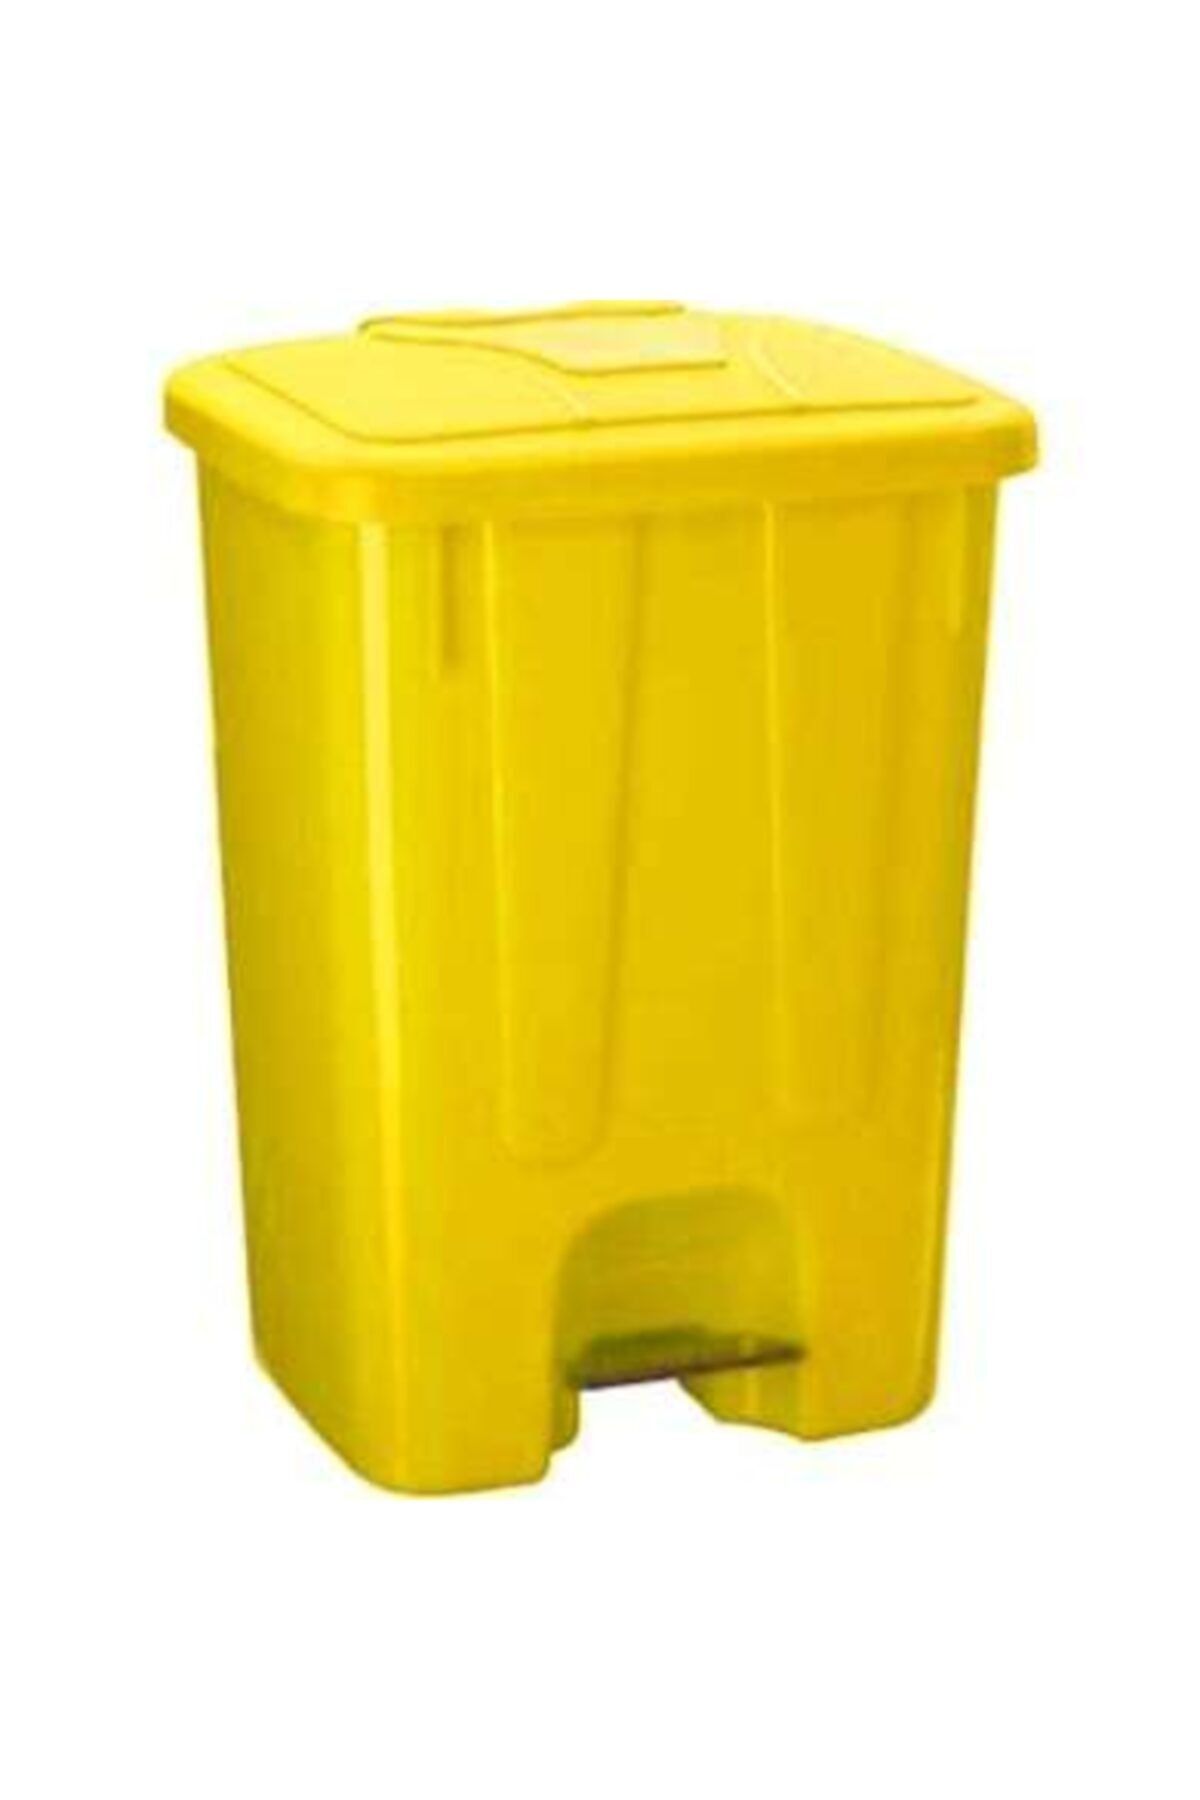 Şen Yayla Şenyayla Pedallı Çöp Konteyneri 65l Sarı